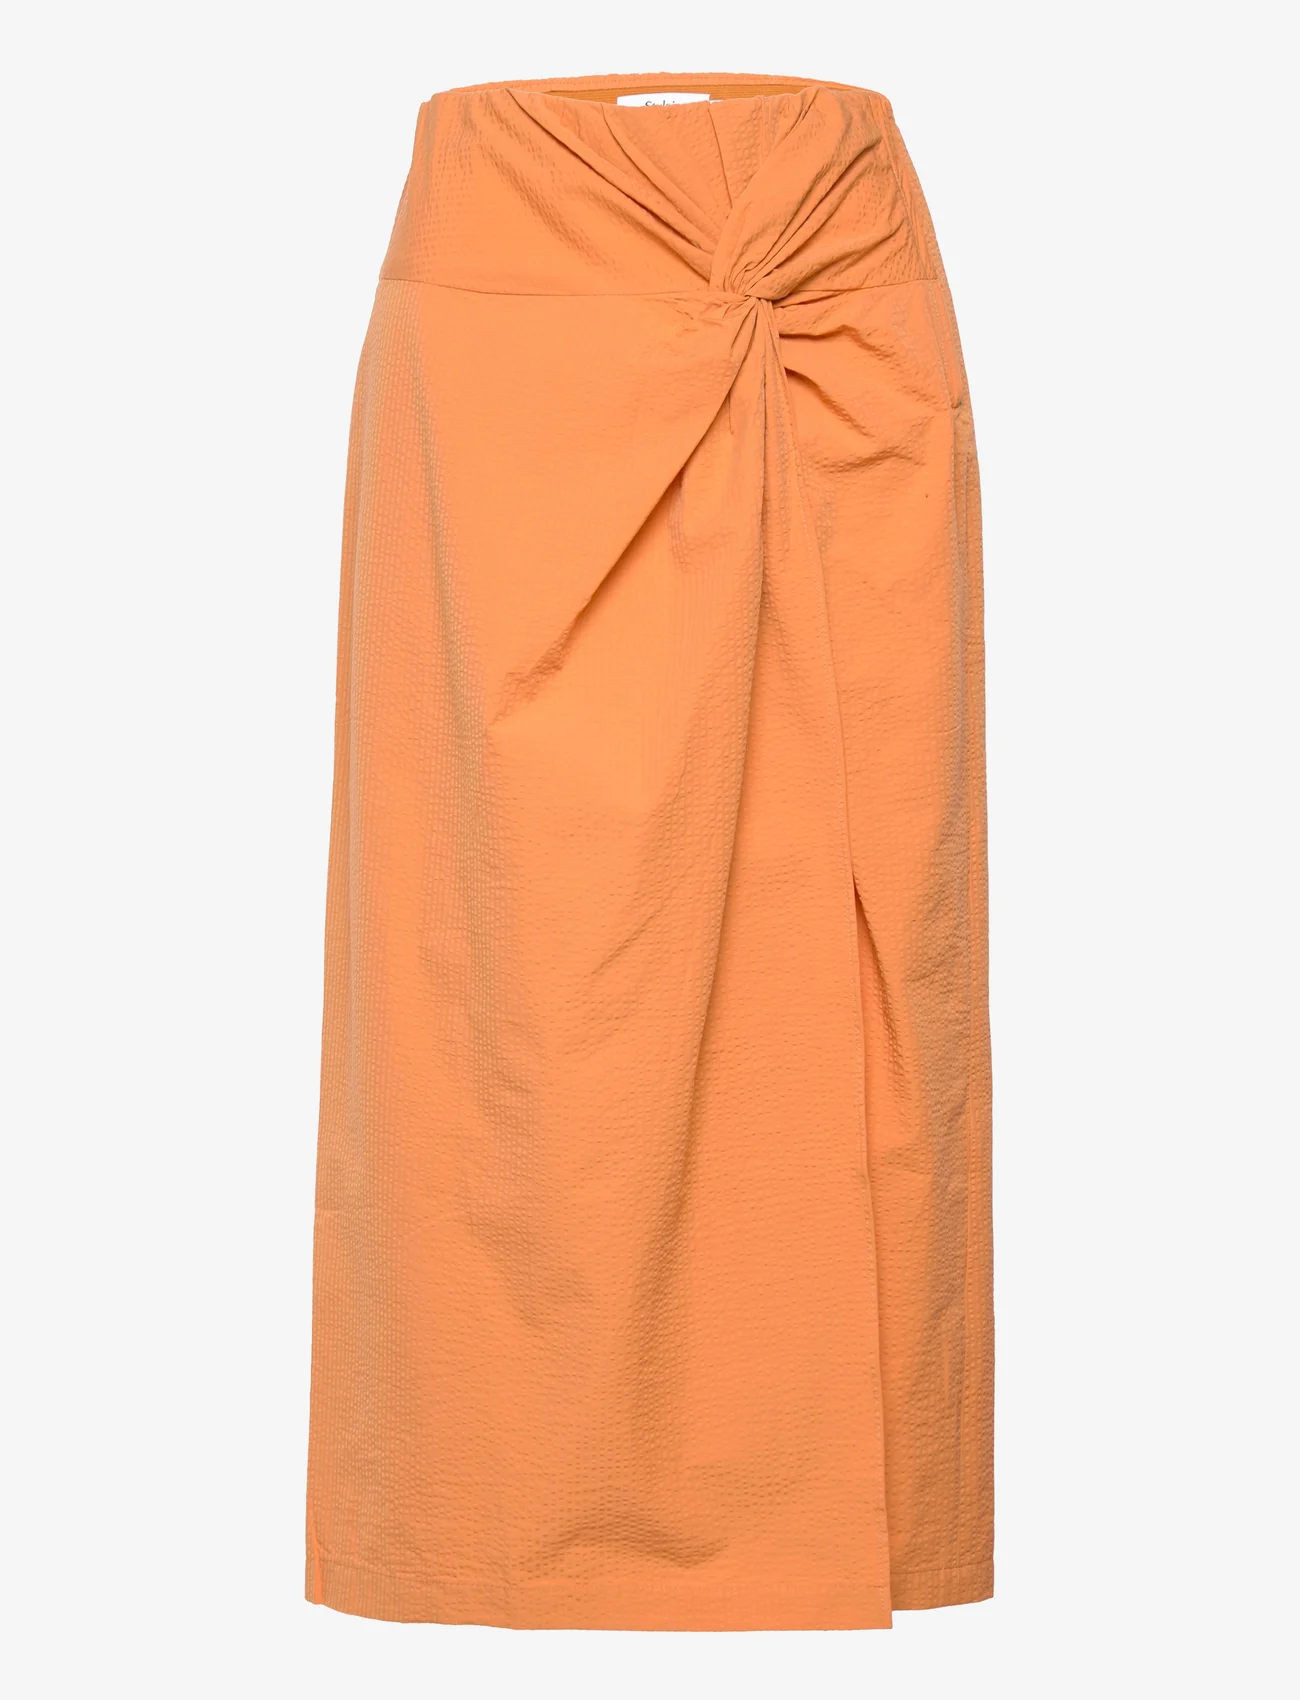 Stylein - MARCENA SKIRT - maxi skirts - orange - 0